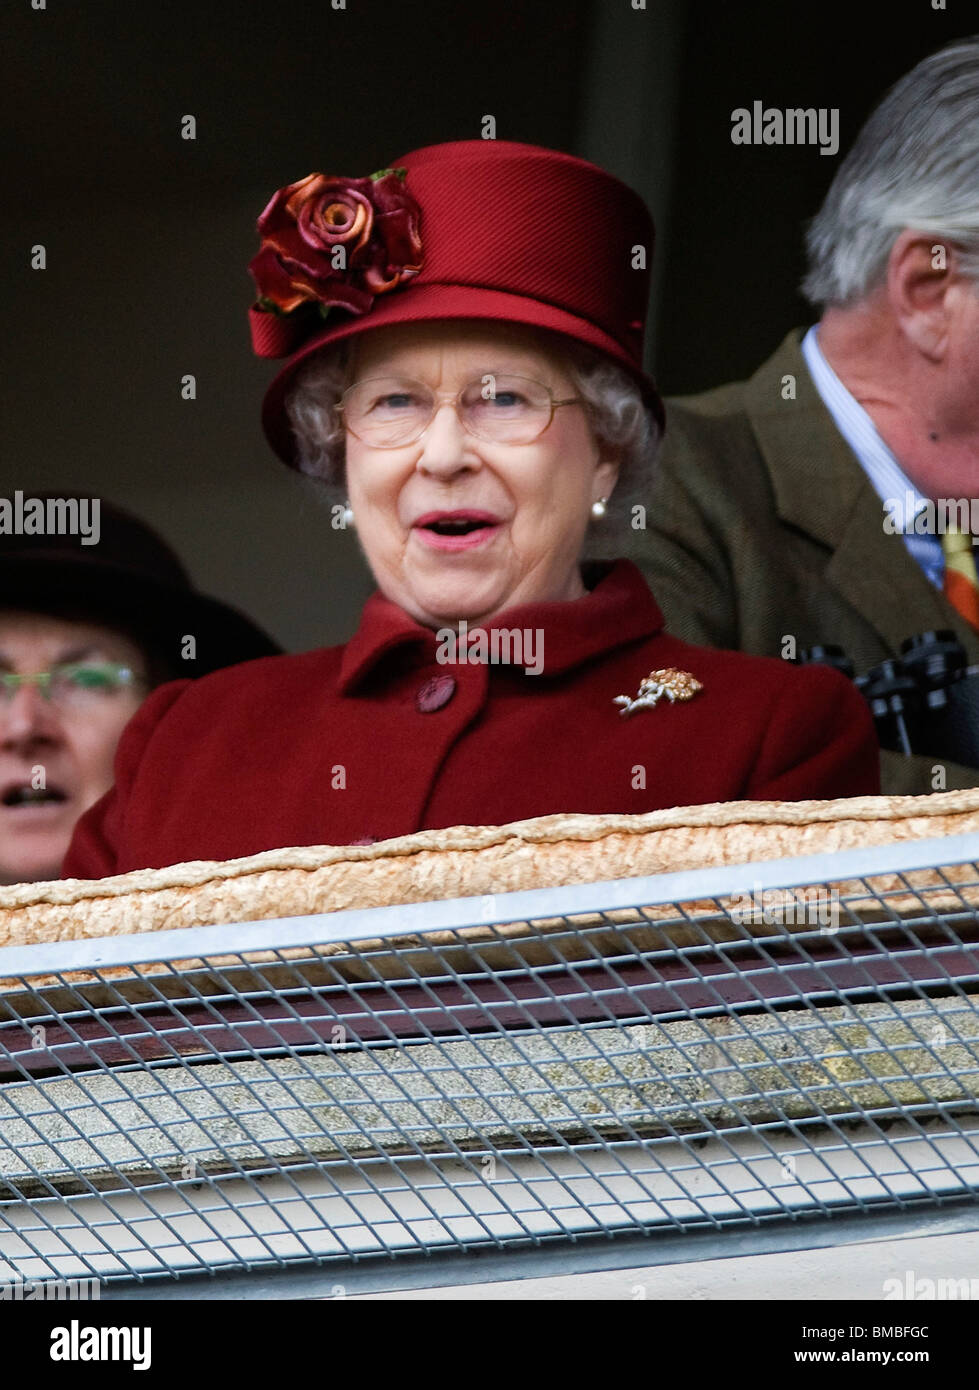 Britain's Queen Elizabeth II at the Cheltenham Festival 2009 Stock Photo